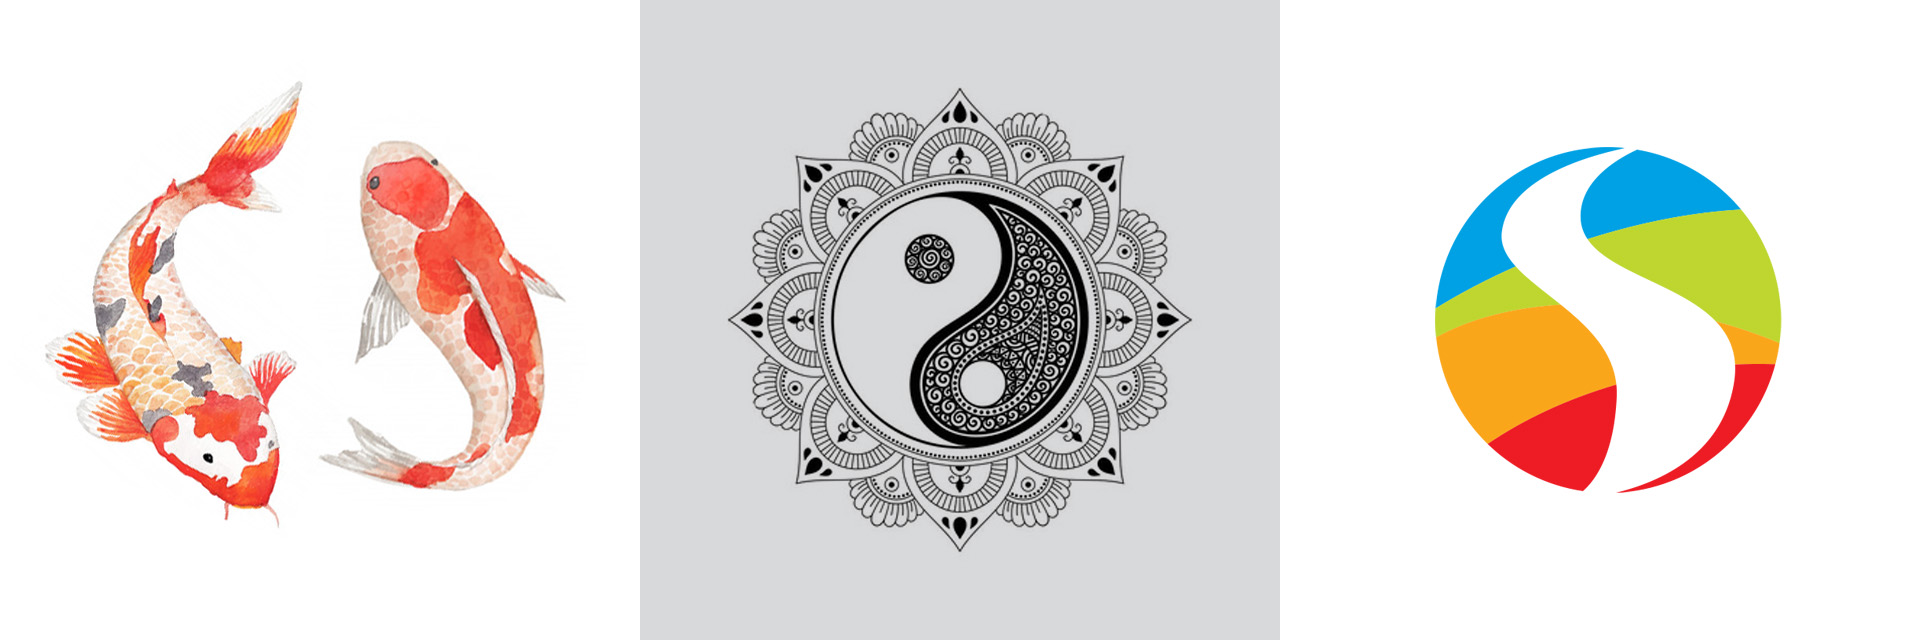 Imagem de carpas e do Yin e Yang inspiracionais para a criação do símbolo da identidade visual da Simbolicah.